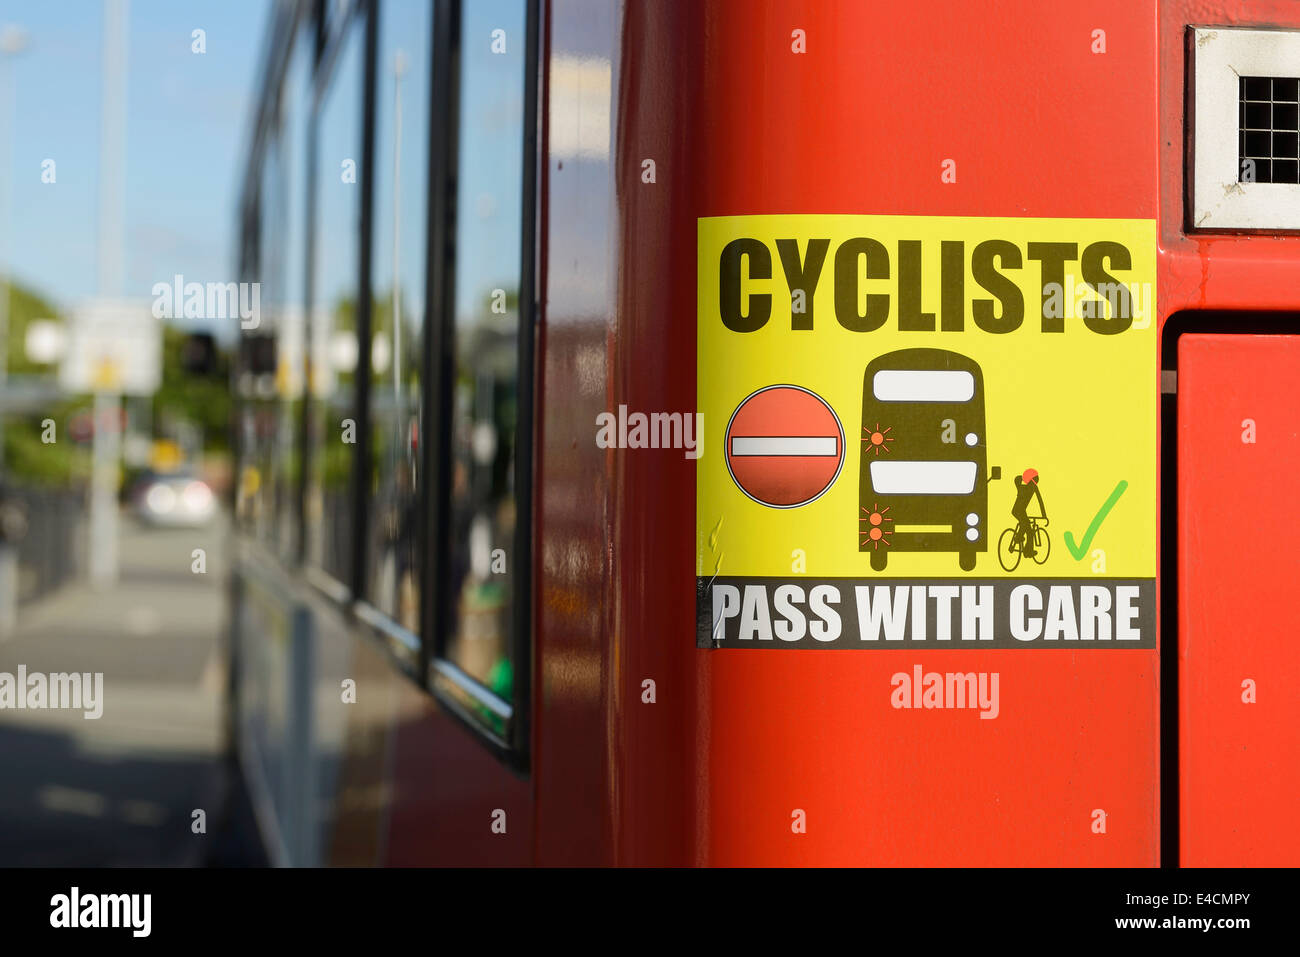 Les cyclistes passent avec soin signe sur l'arrière d'un autobus Banque D'Images